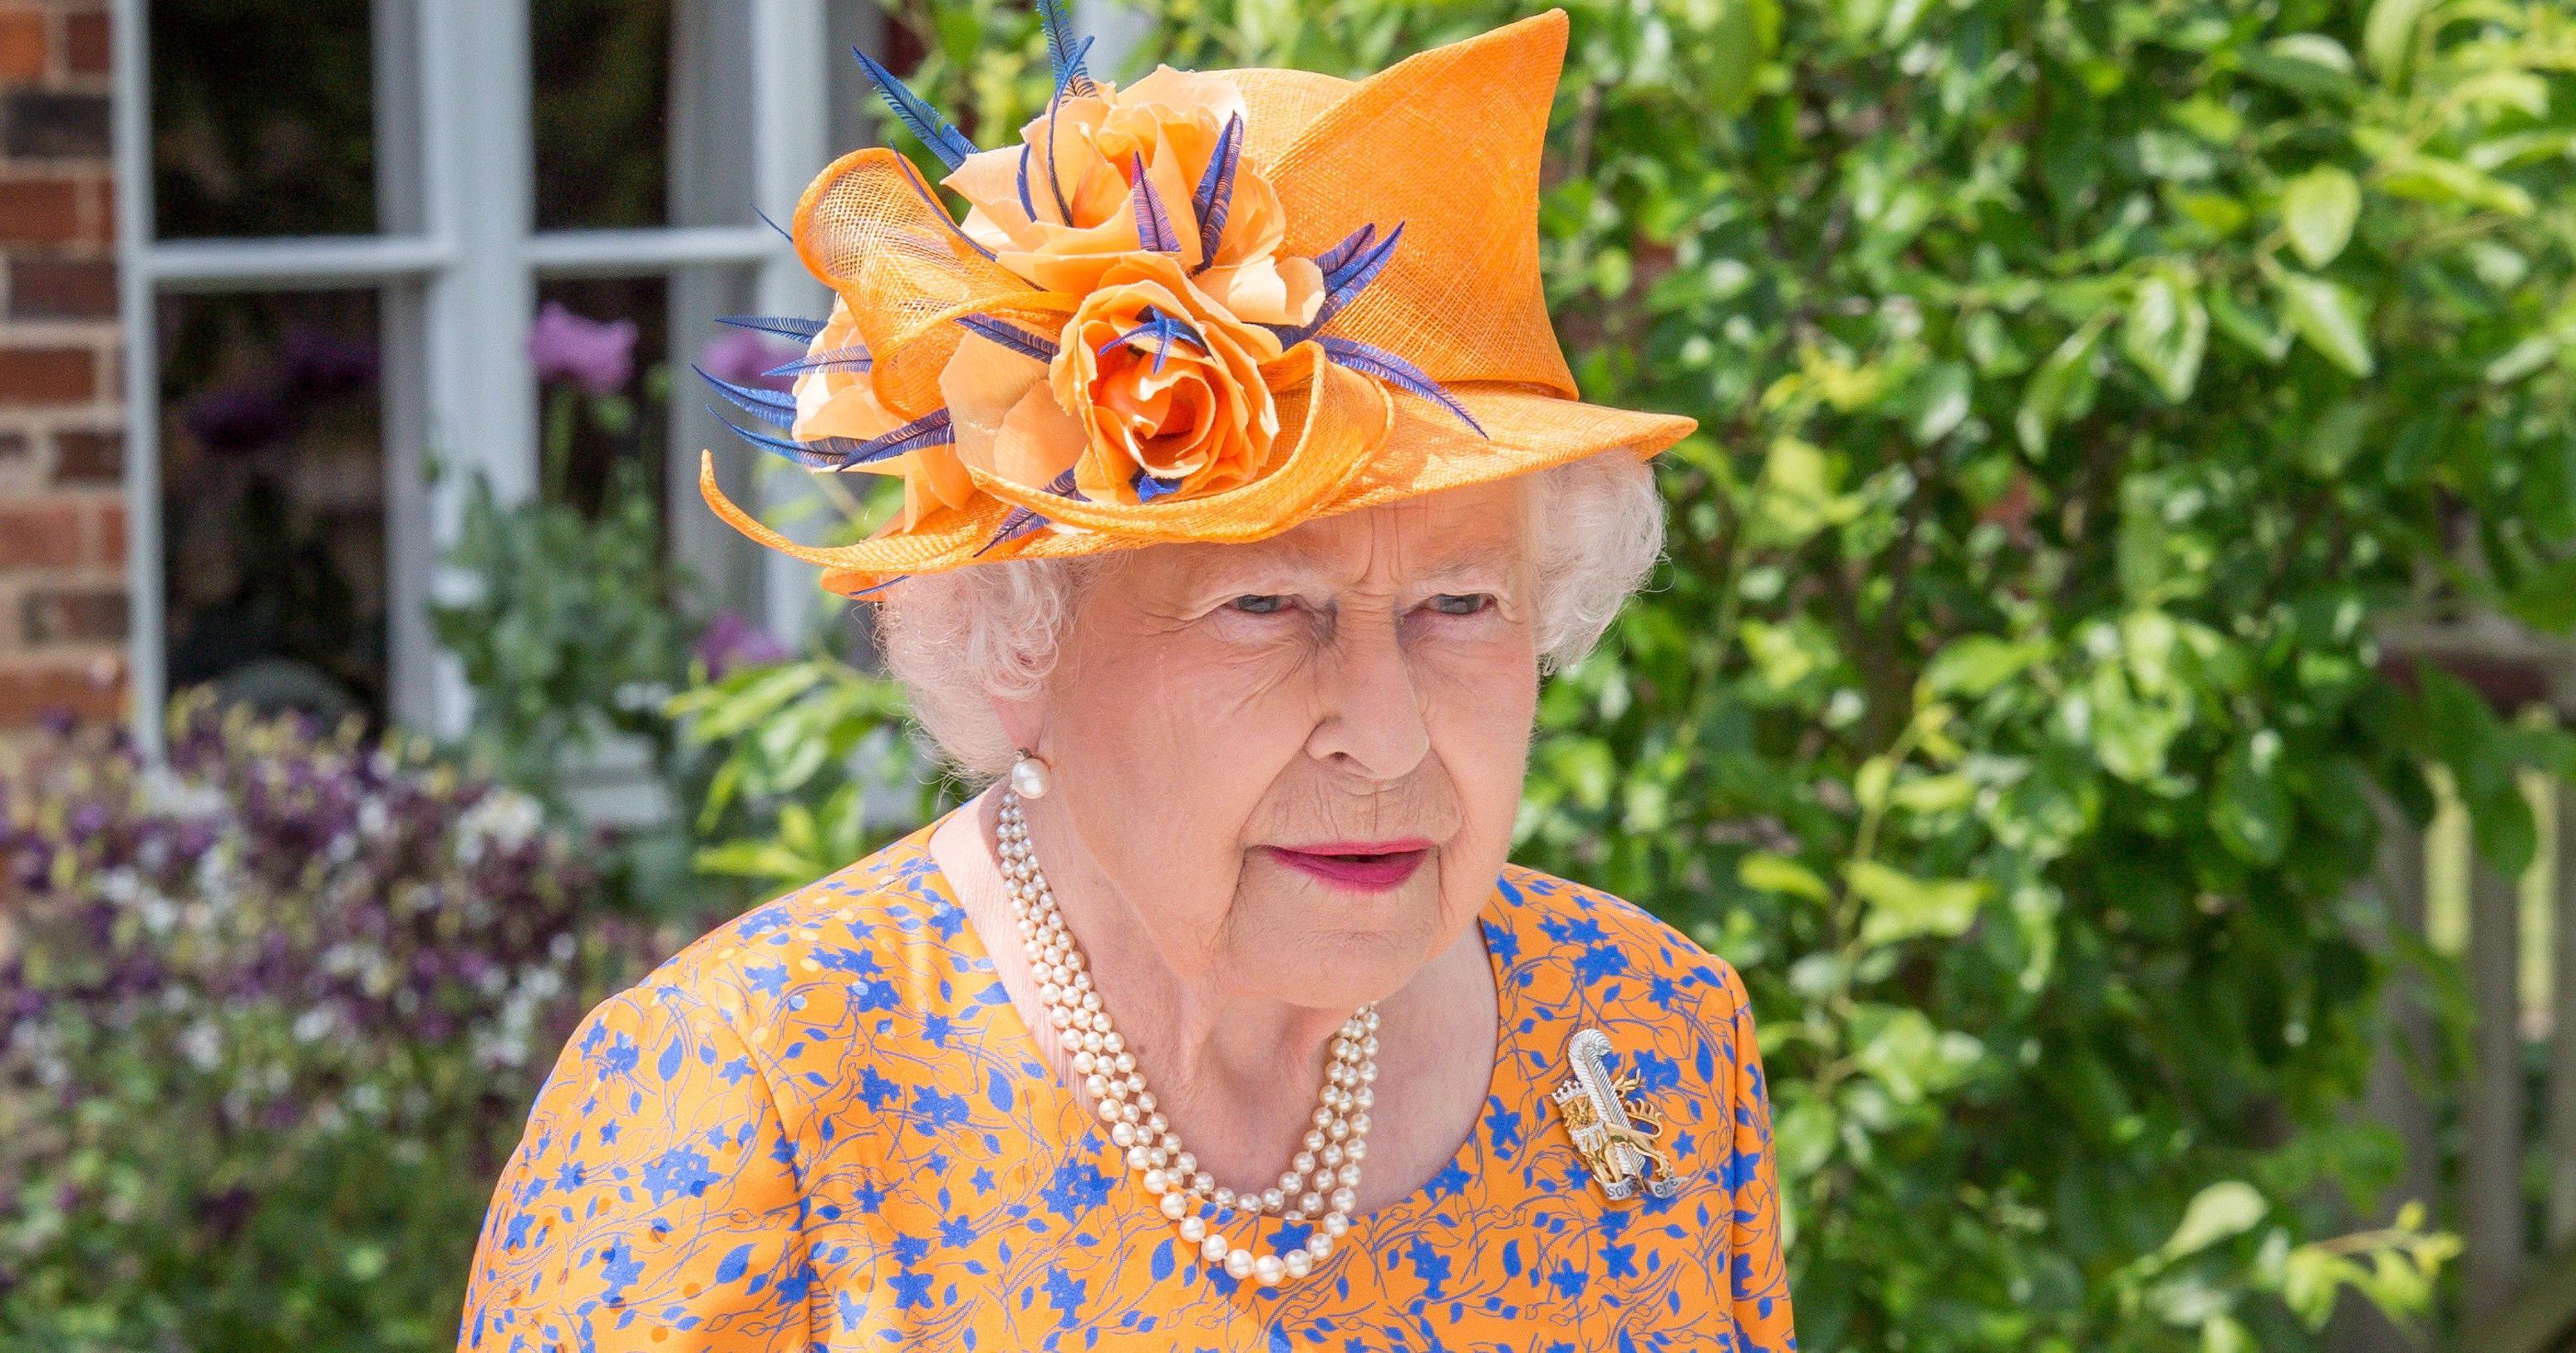 Снова впечатлила: 91-летняя королева Елизавета II продемонстрировала новый яркий образ